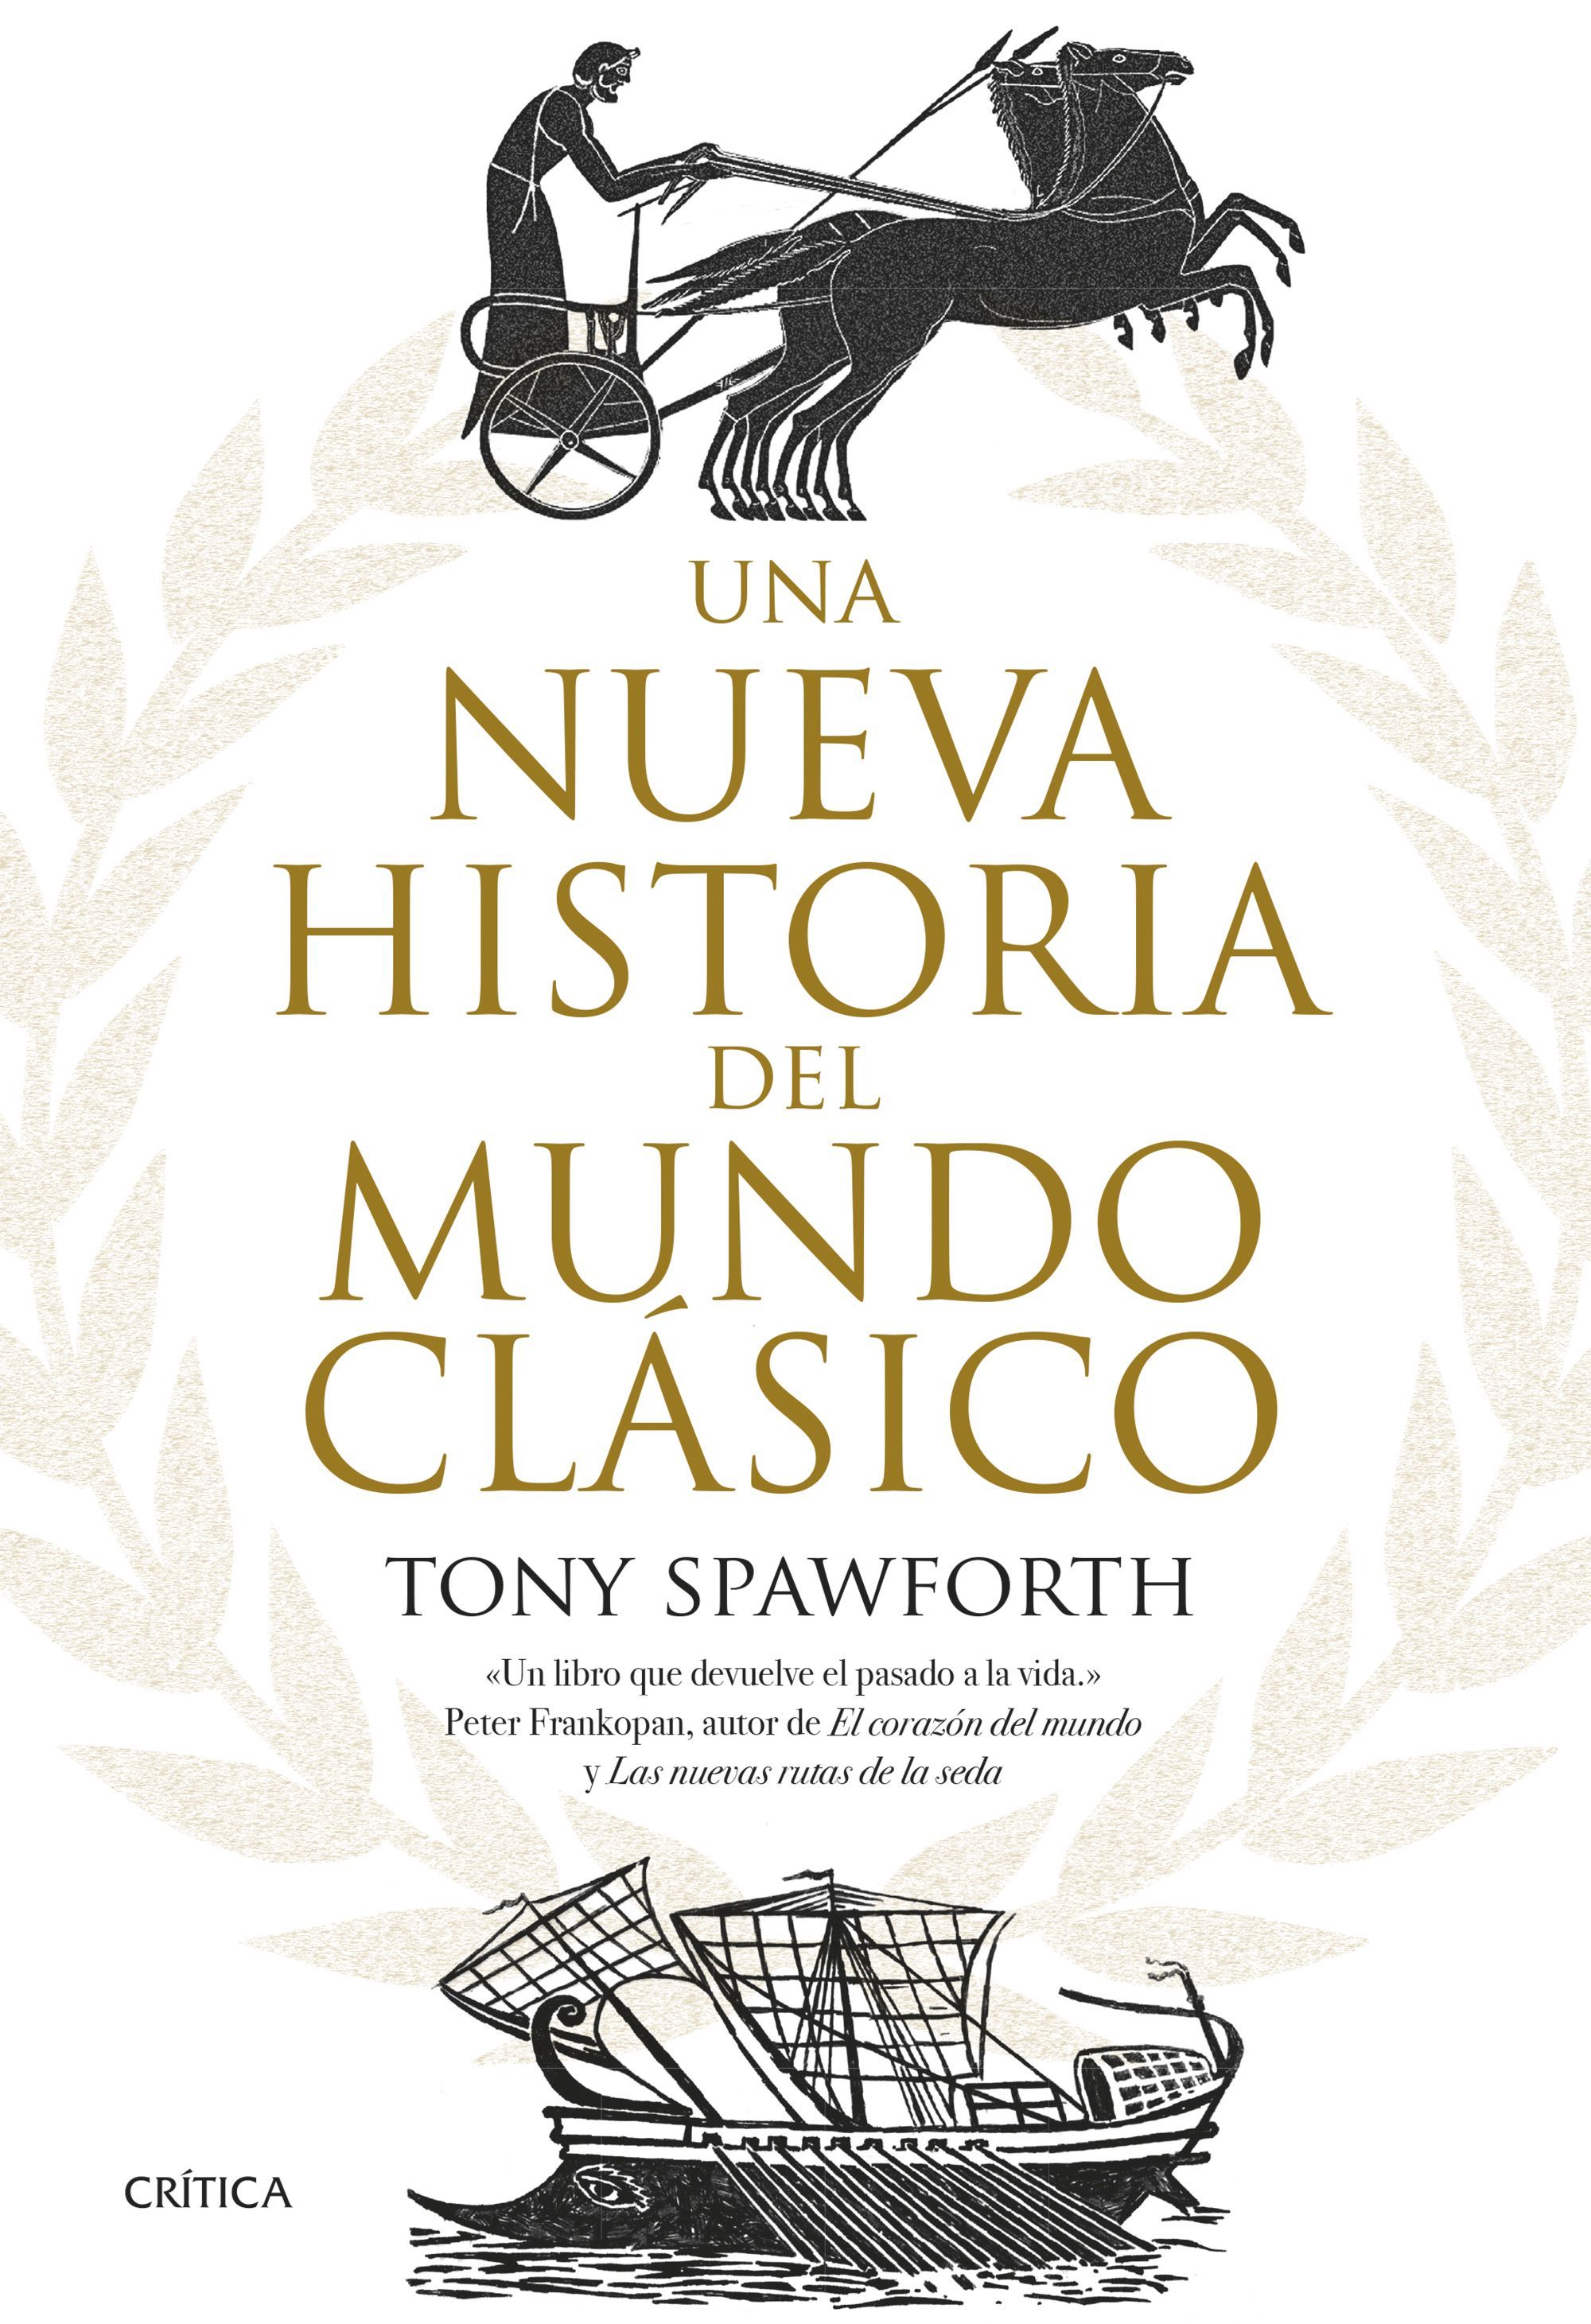 El historiador Tony Spawforth vuelve a las librerías con Una nueva historia del mundo clásico